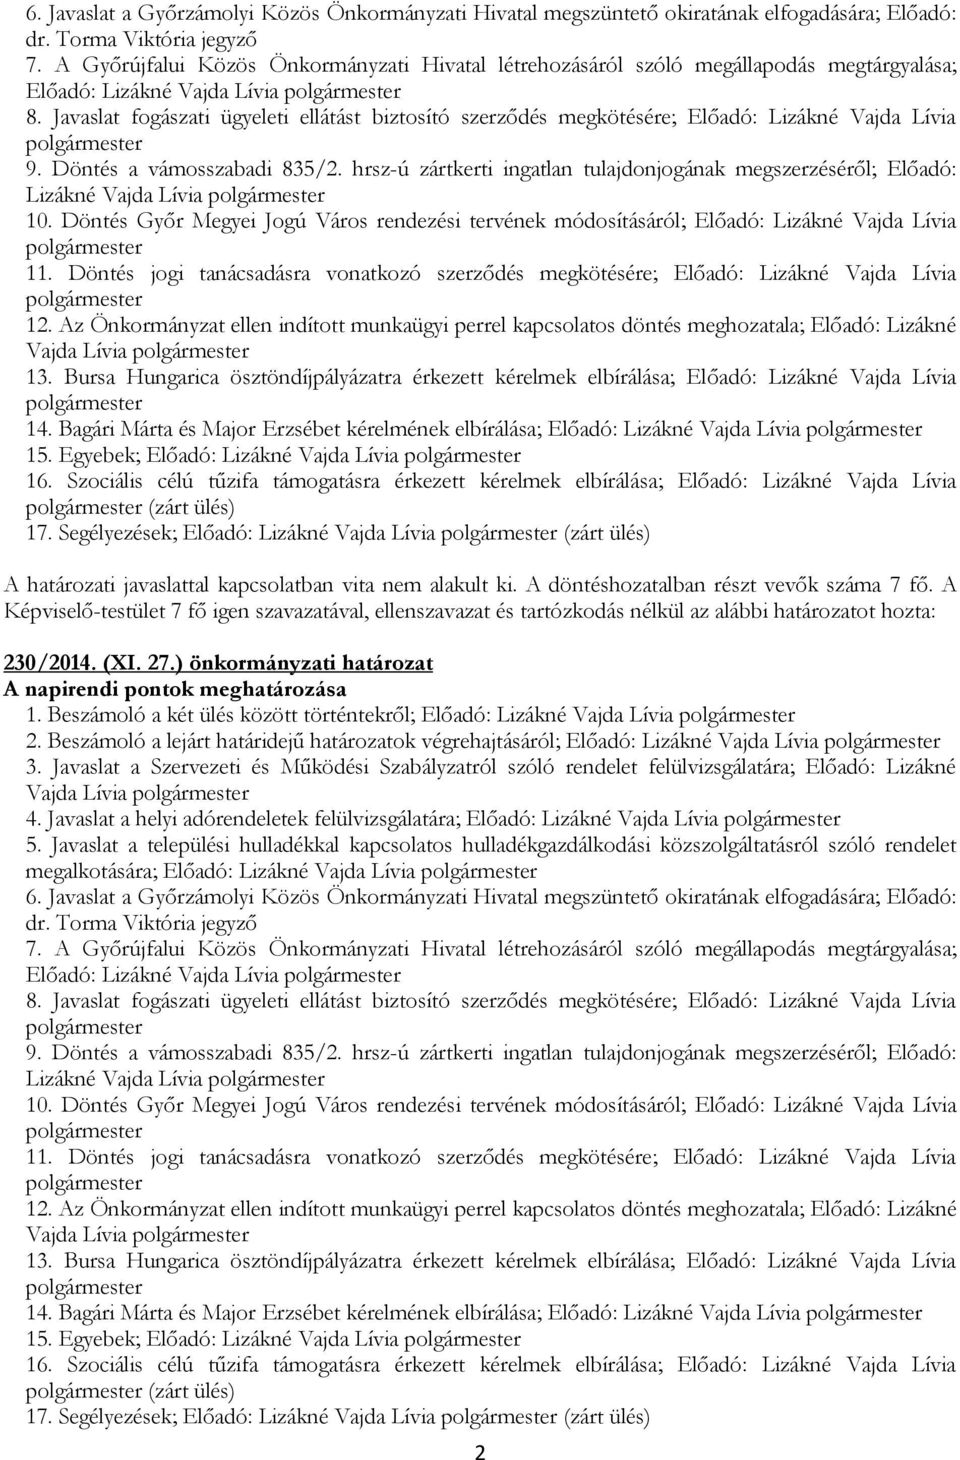 Döntés a vámosszabadi 835/2. hrsz-ú zártkerti ingatlan tulajdonjogának megszerzéséről; Előadó: Lizákné Vajda Lívia 10.